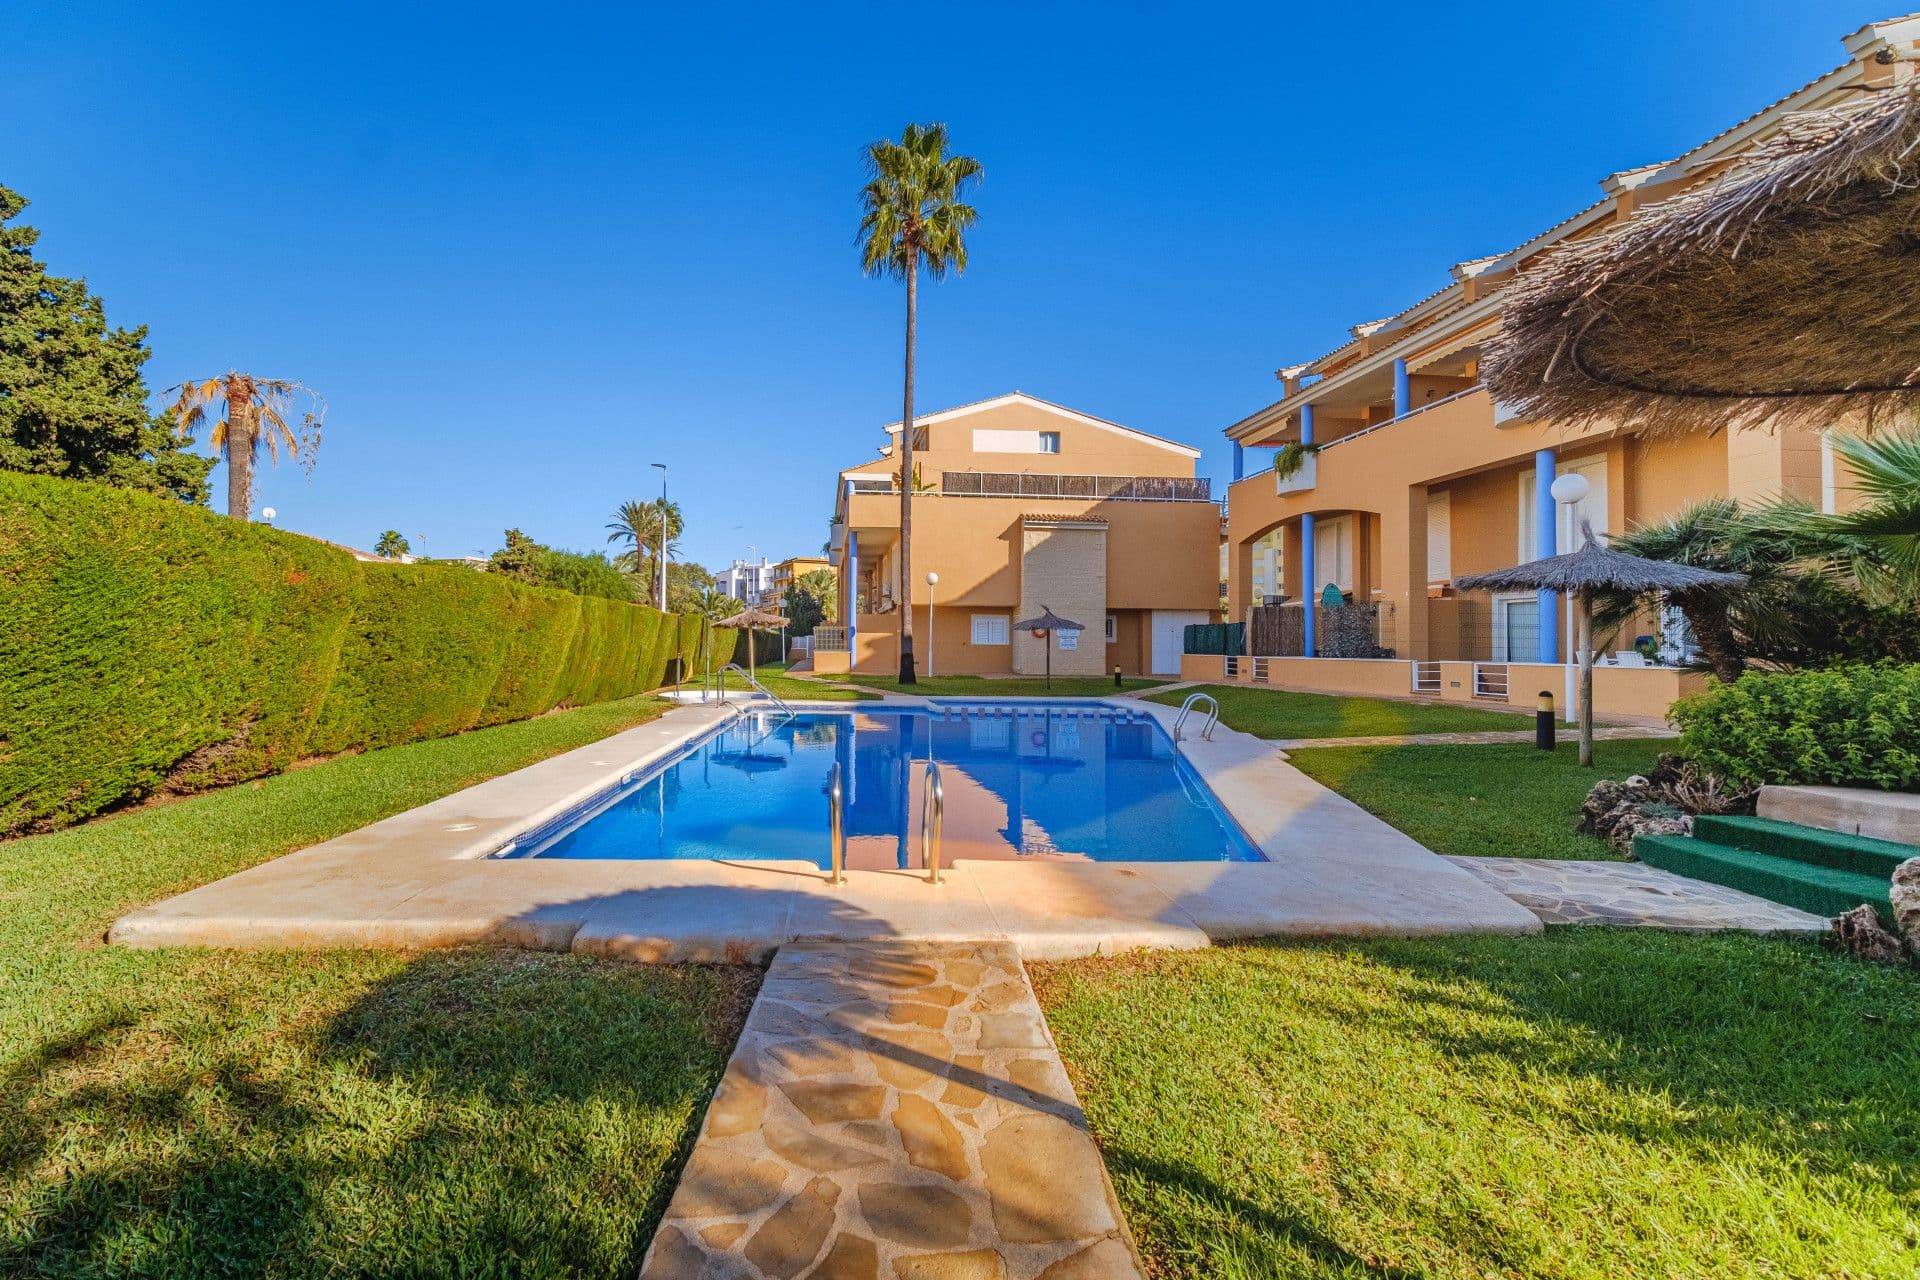 Magnifique penthouse en duplex dans une urbanisation très calme, proche de la plage, dans la zone de Cala Blanca, à Jávea, Alicante.